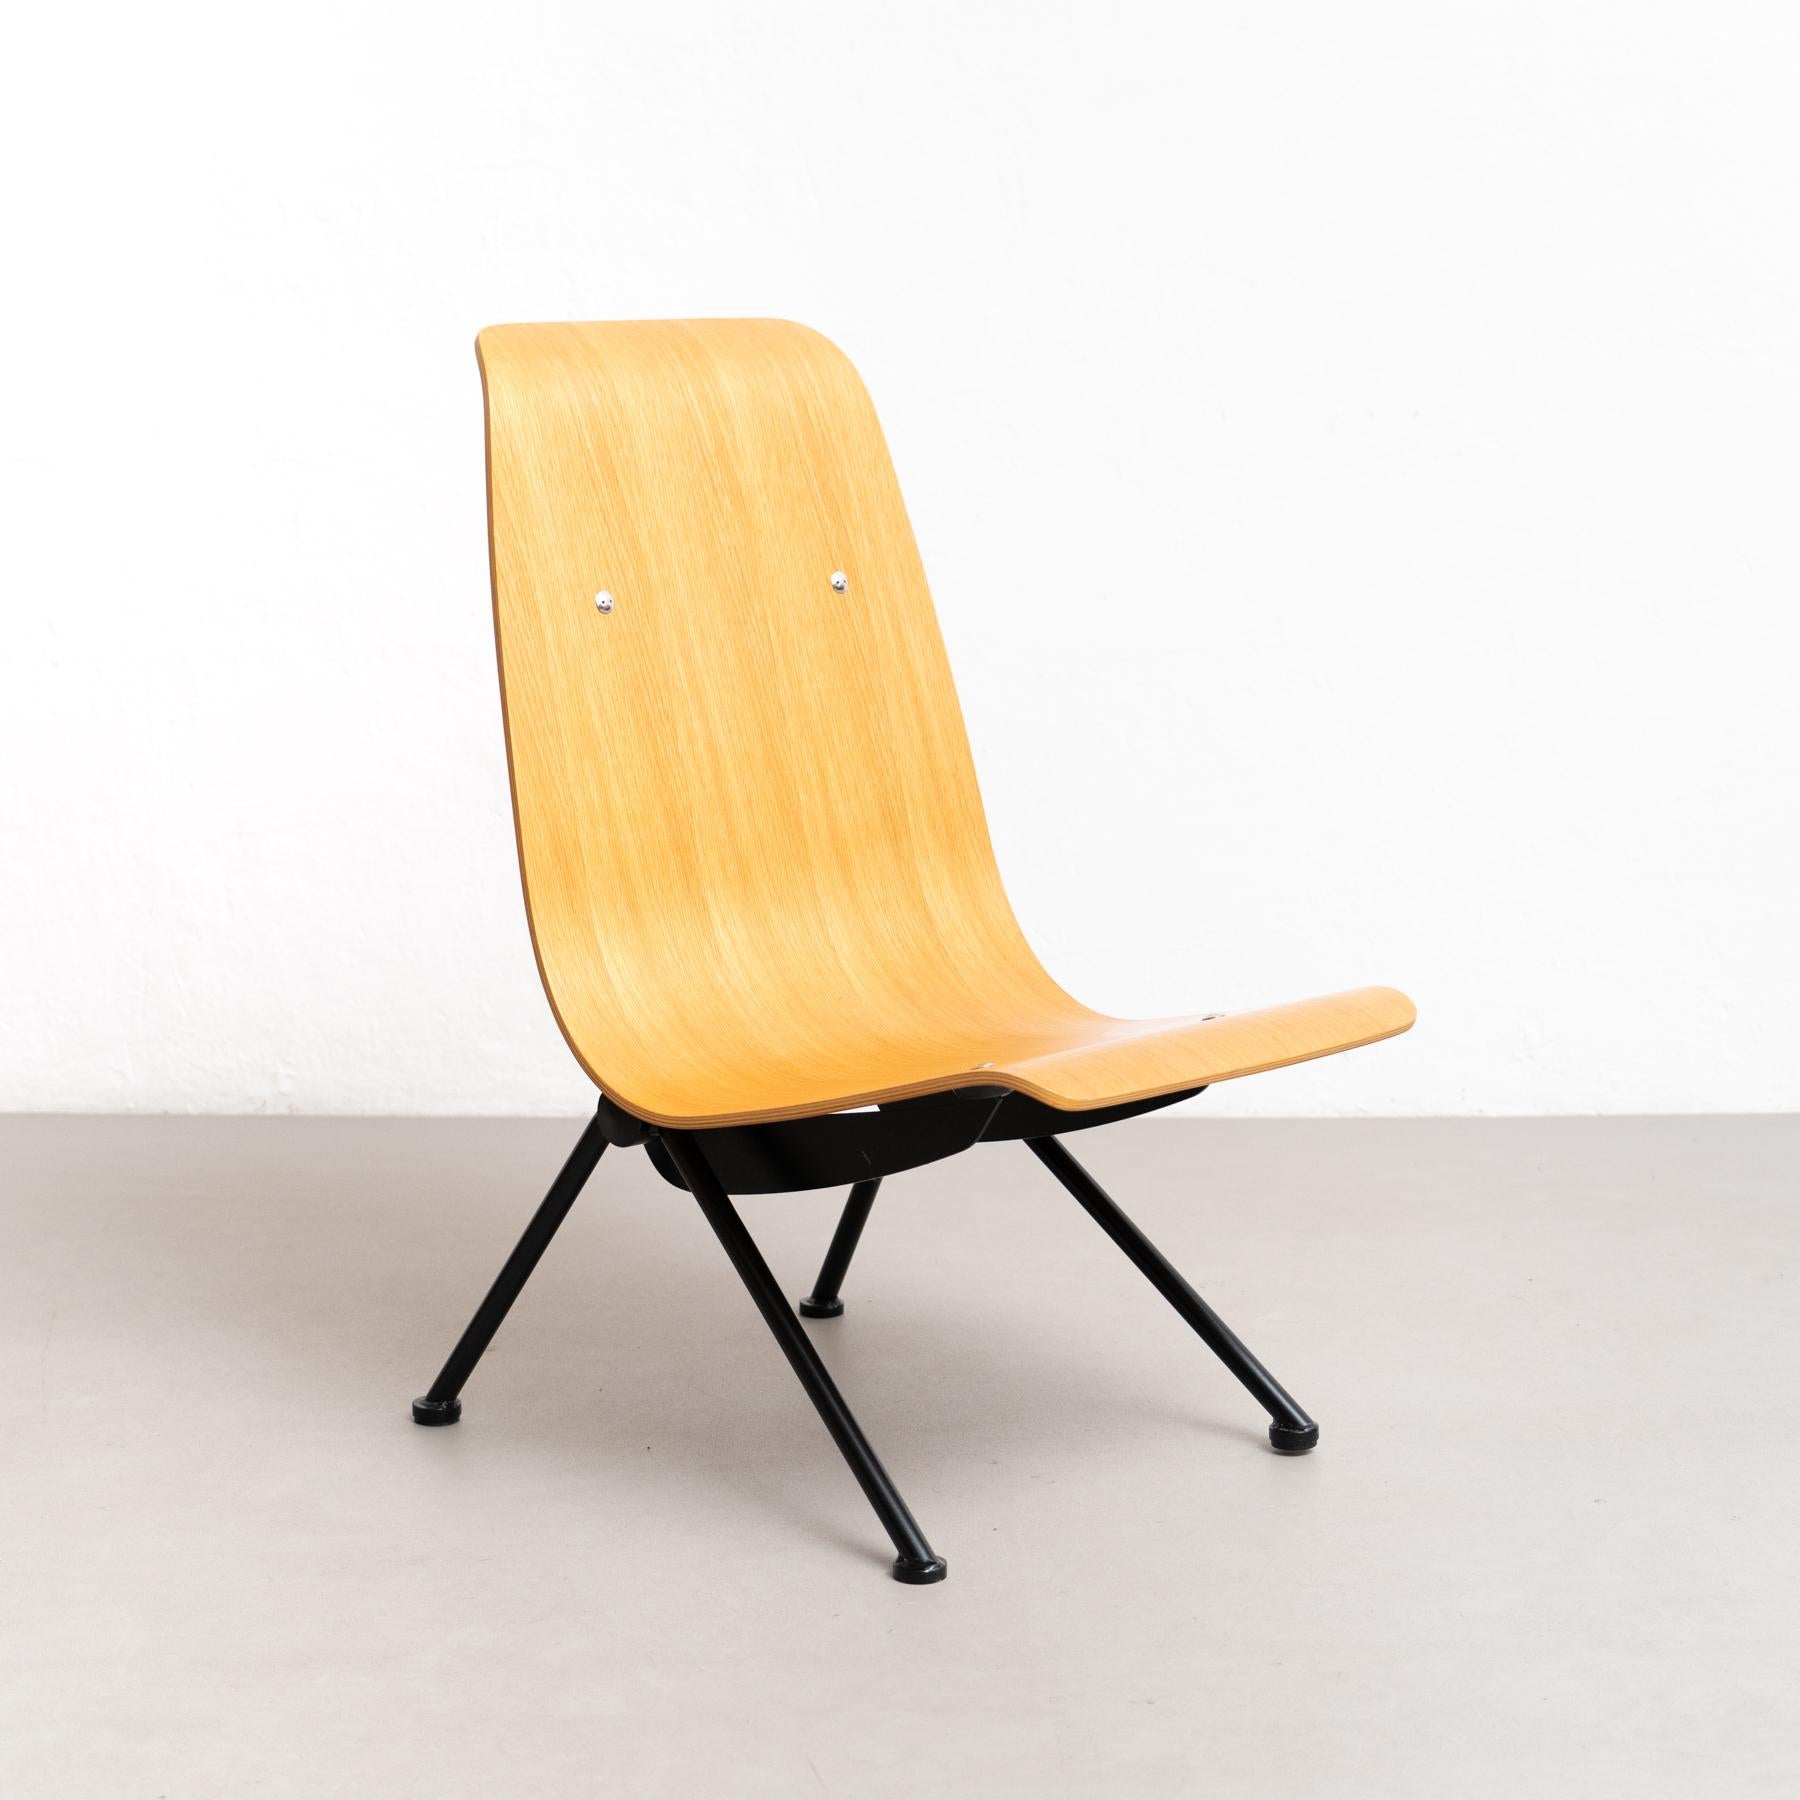 Treten Sie ein in die Welt des nachhaltigen Designs mit dem Stuhl 